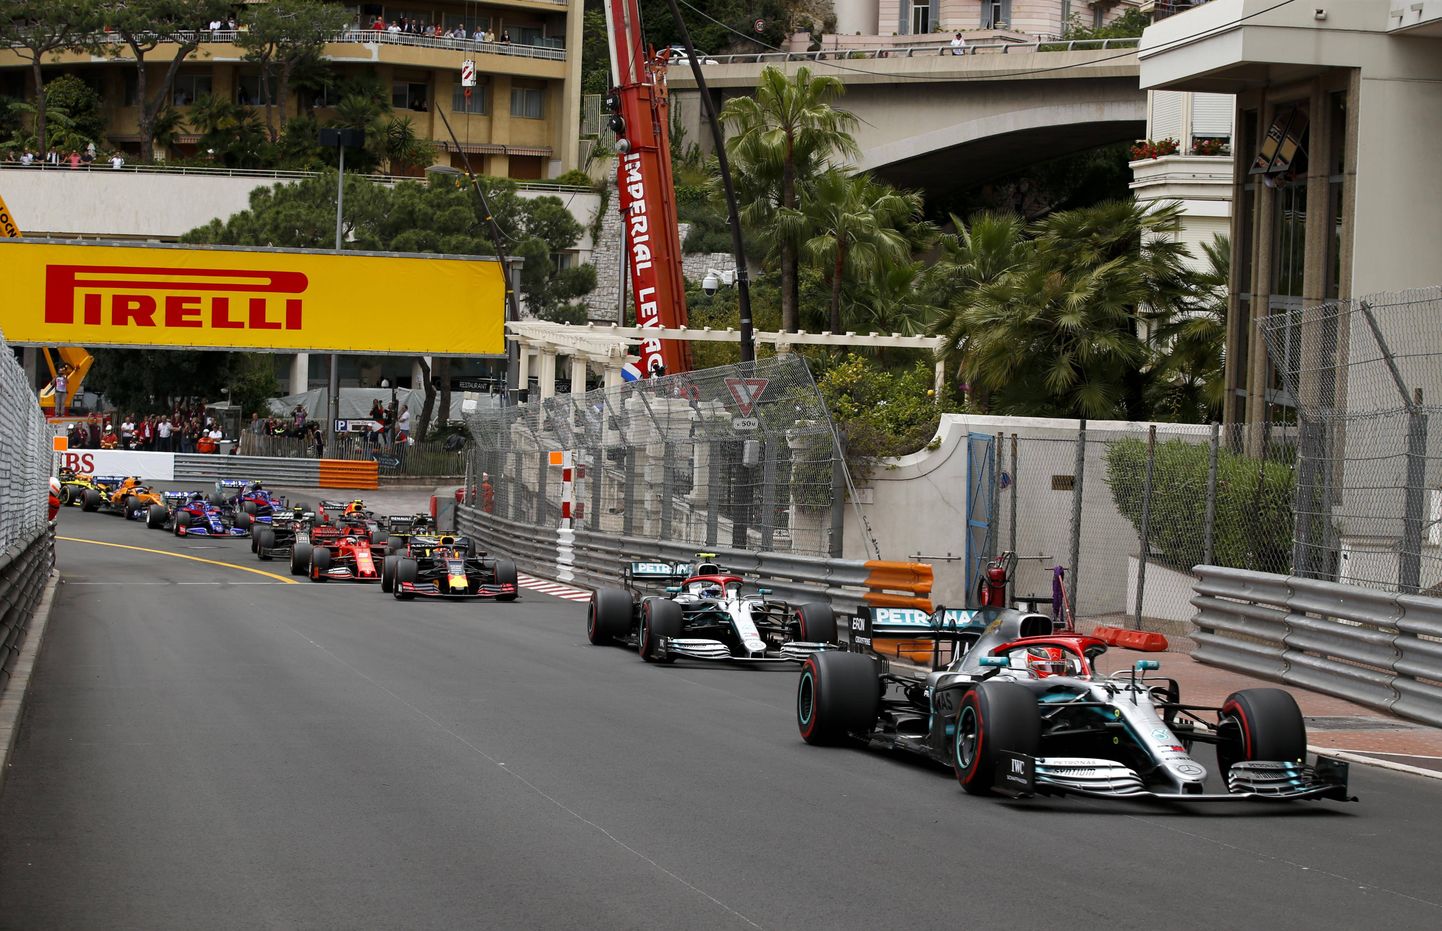 Vormel 1 sarjas võib peagi lisaks Monaco GP-le olla samanimeline tiim.